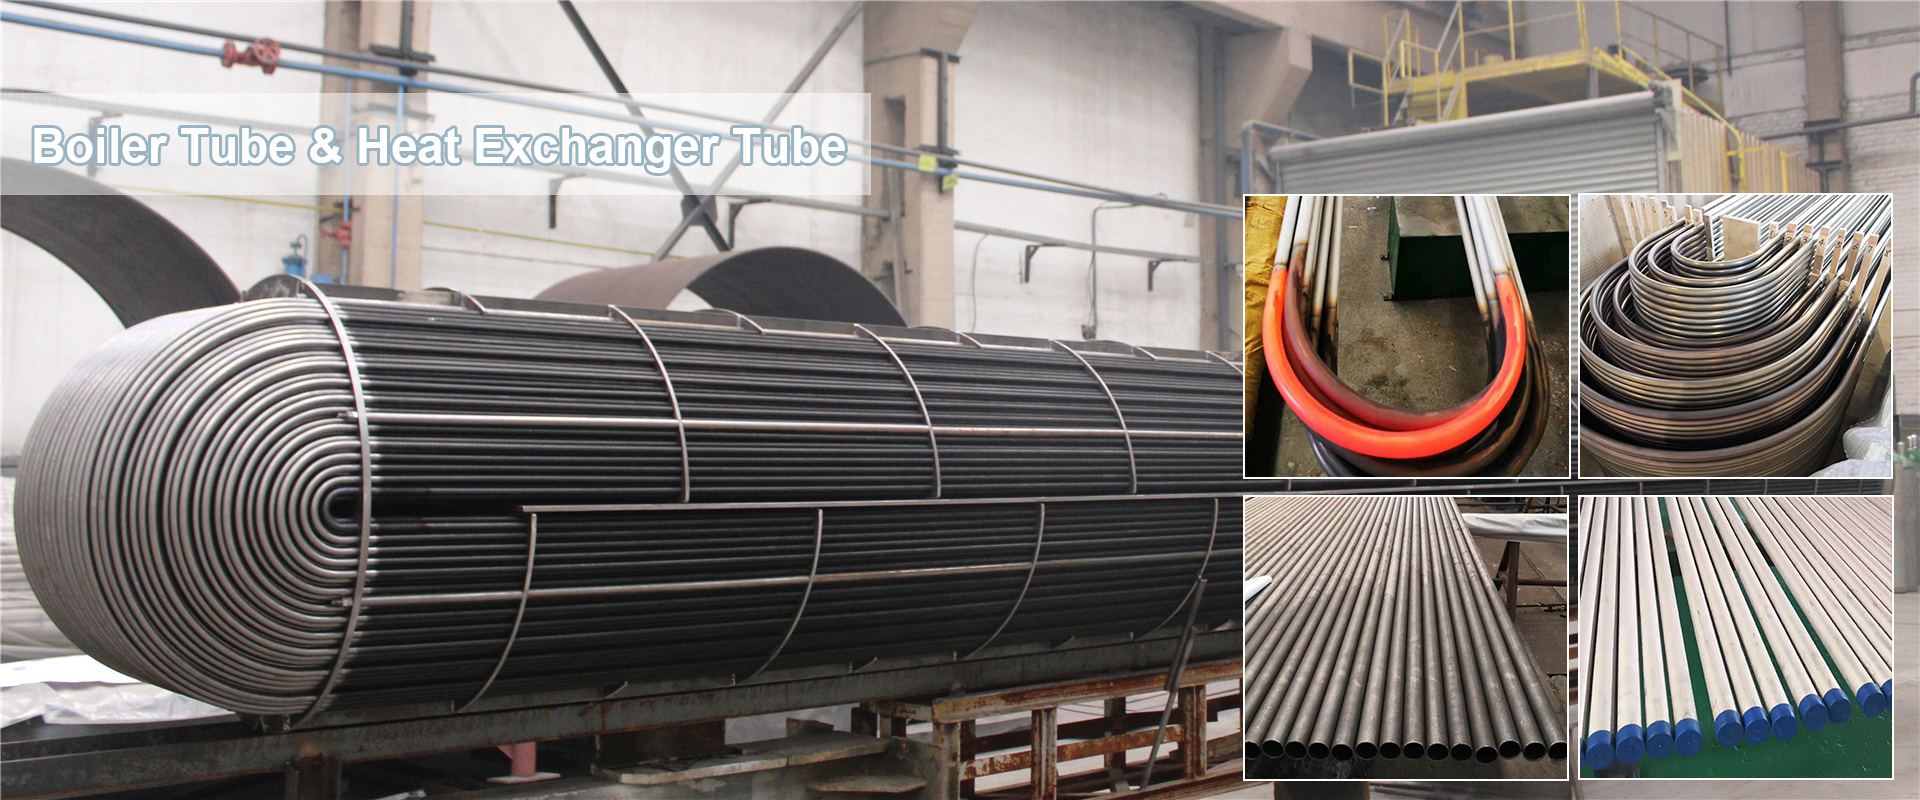 Boiler/Heat Exchanger Tube